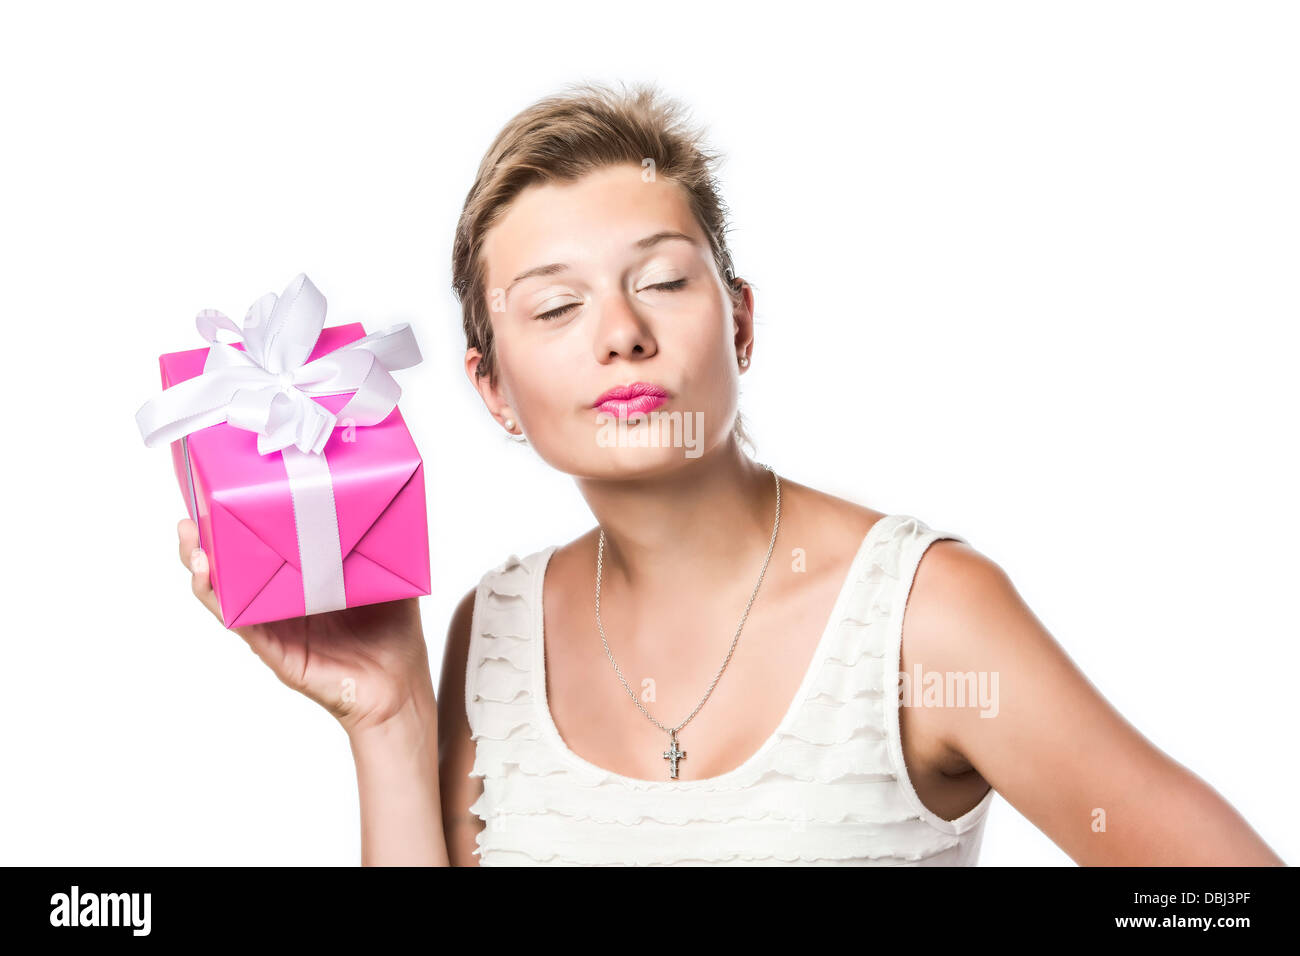 Brünette hübsches Mädchen mit Geburtstag, Weihnachten oder Valentinstag Geschenk, isoliert auf weißem brackground Stockfoto